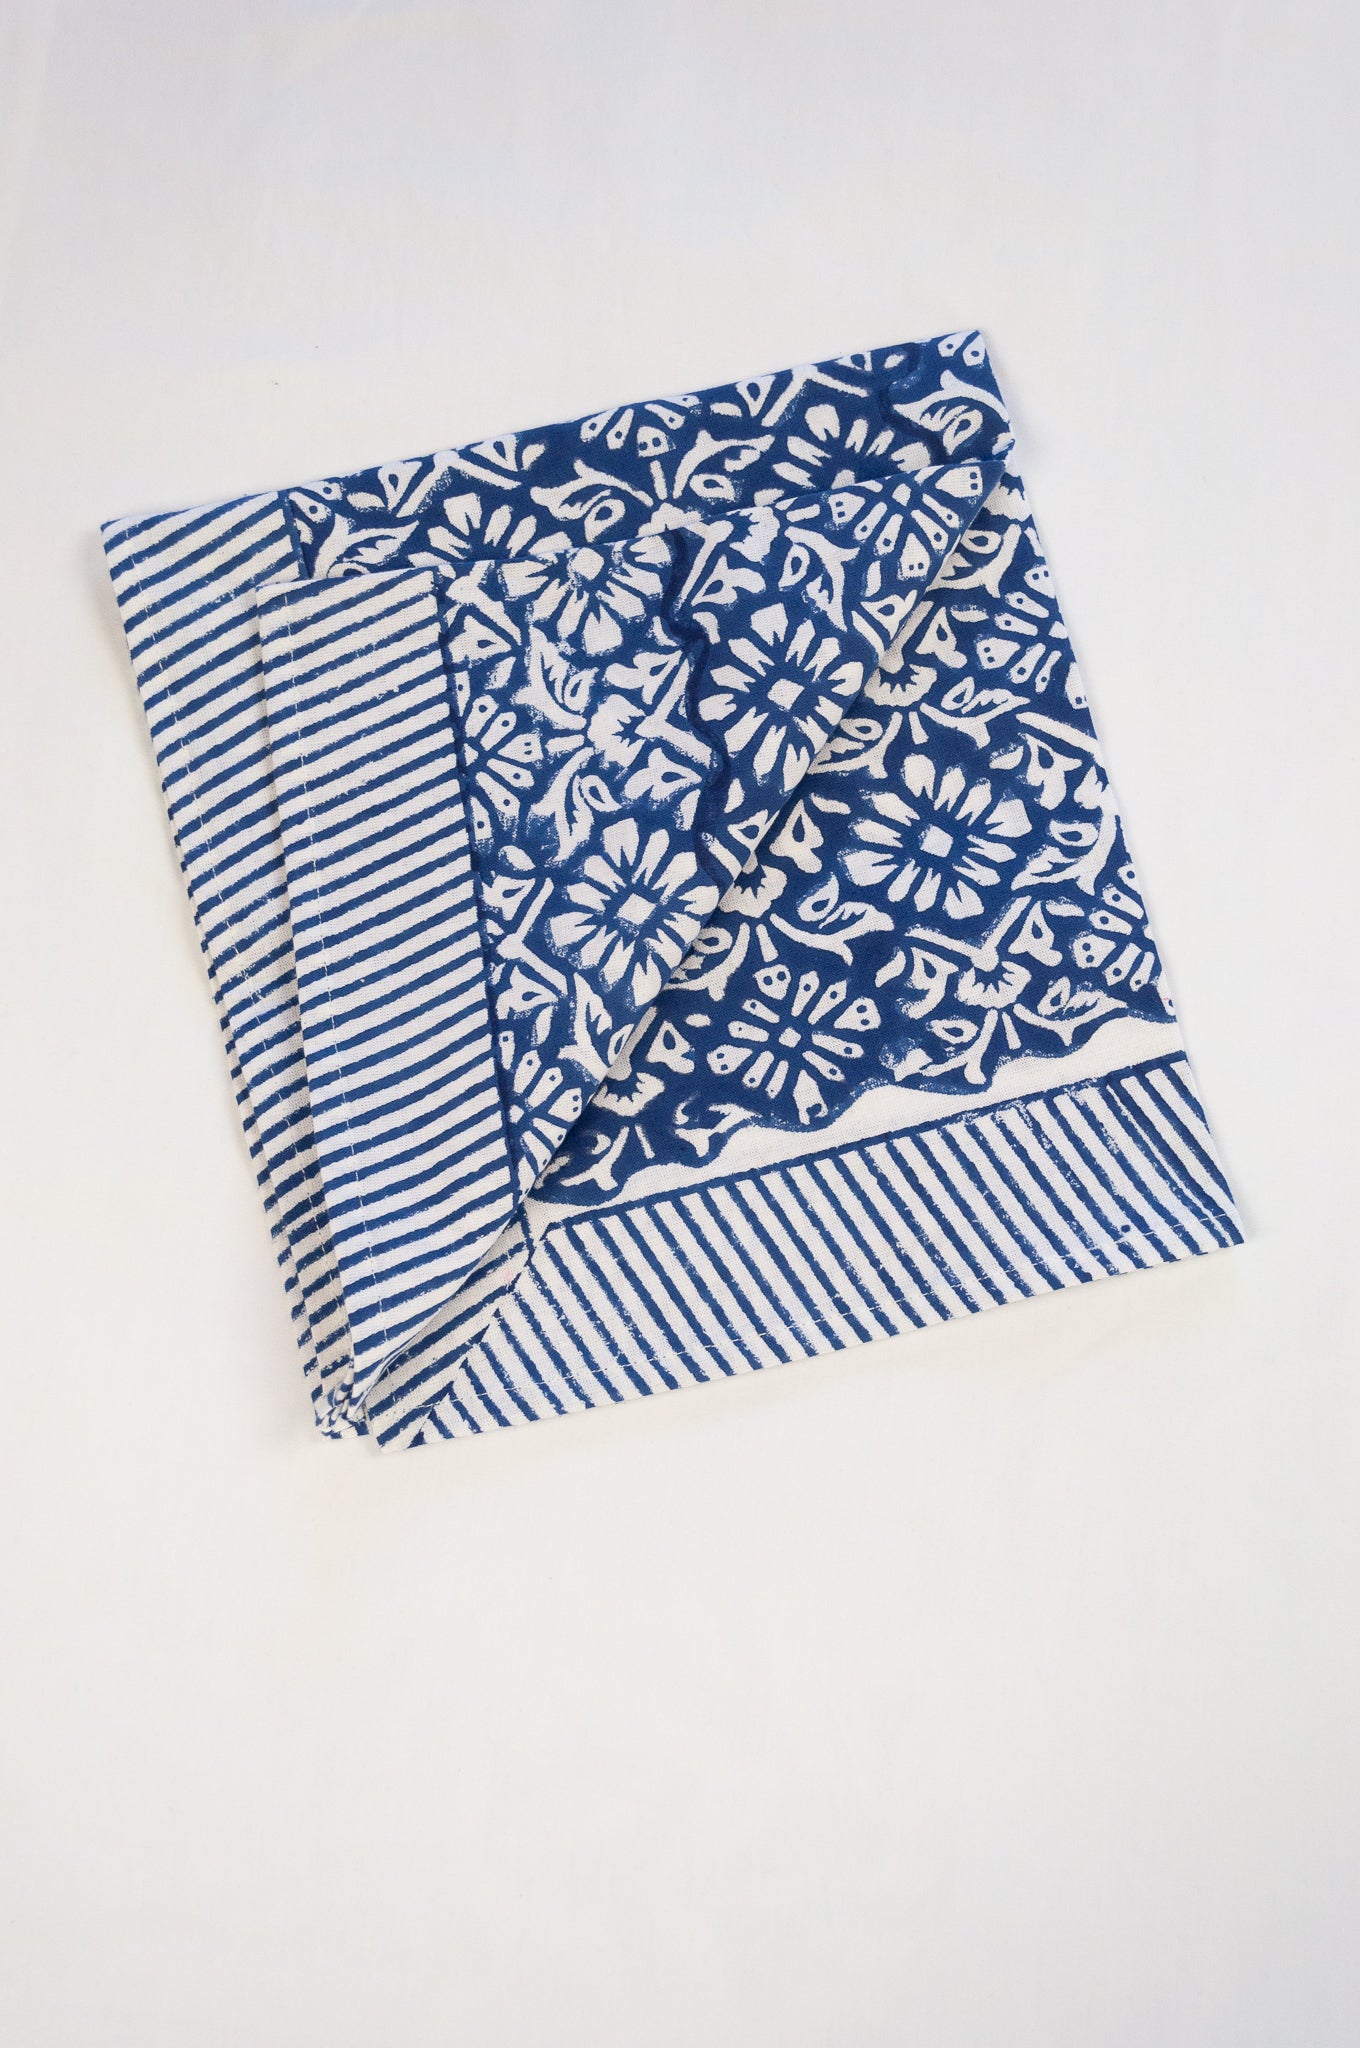 Block print cotton table napkins, Nila indigo blue and white floral print with striped border.